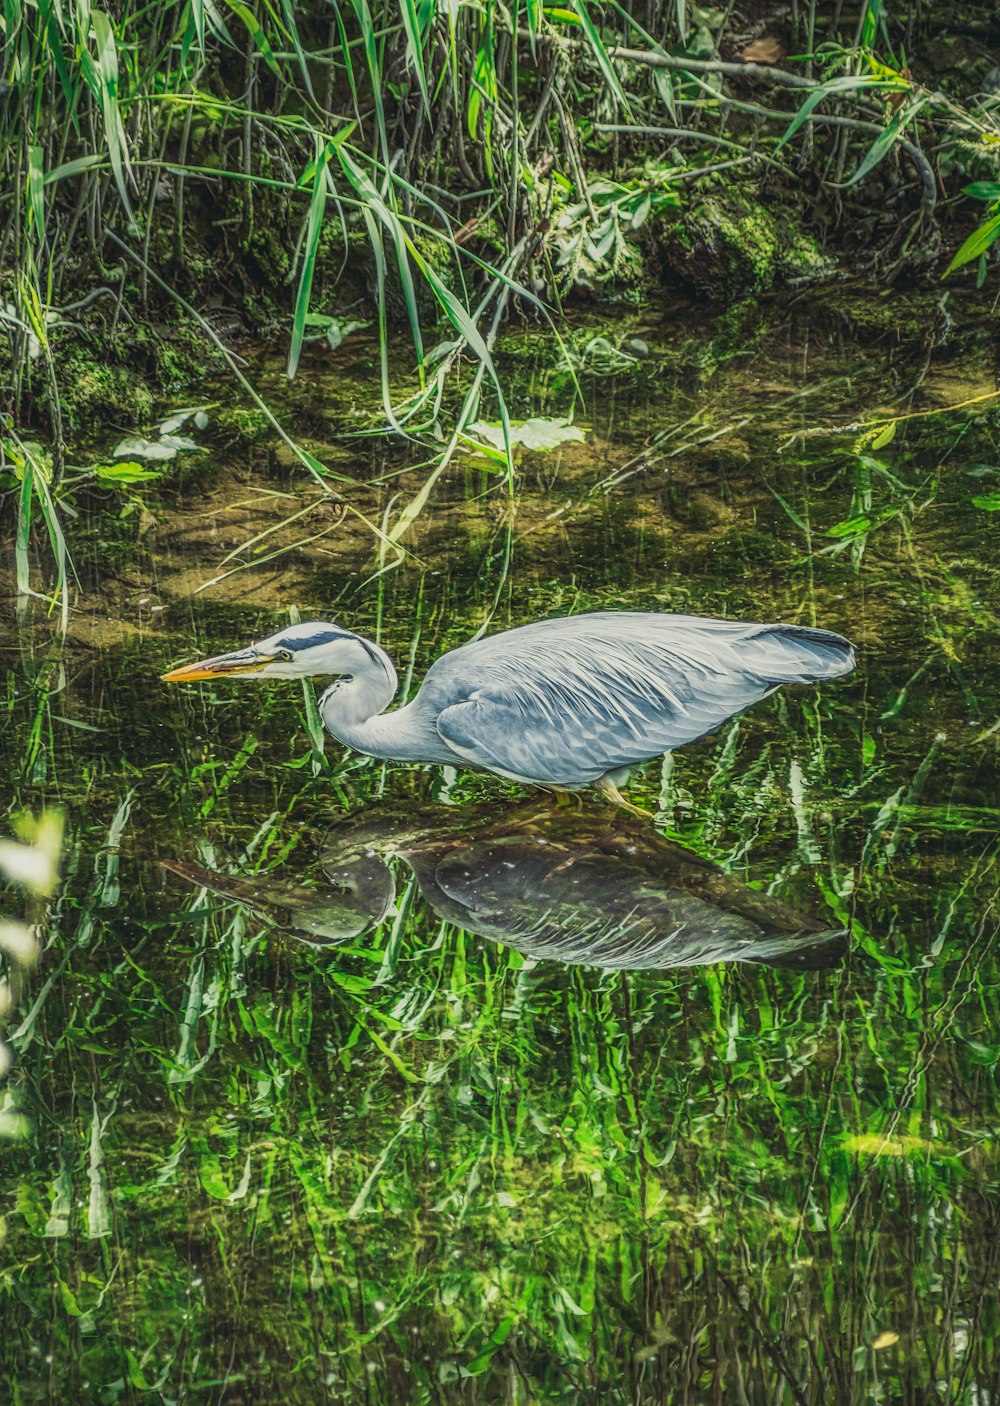 grey bird on water during daytime